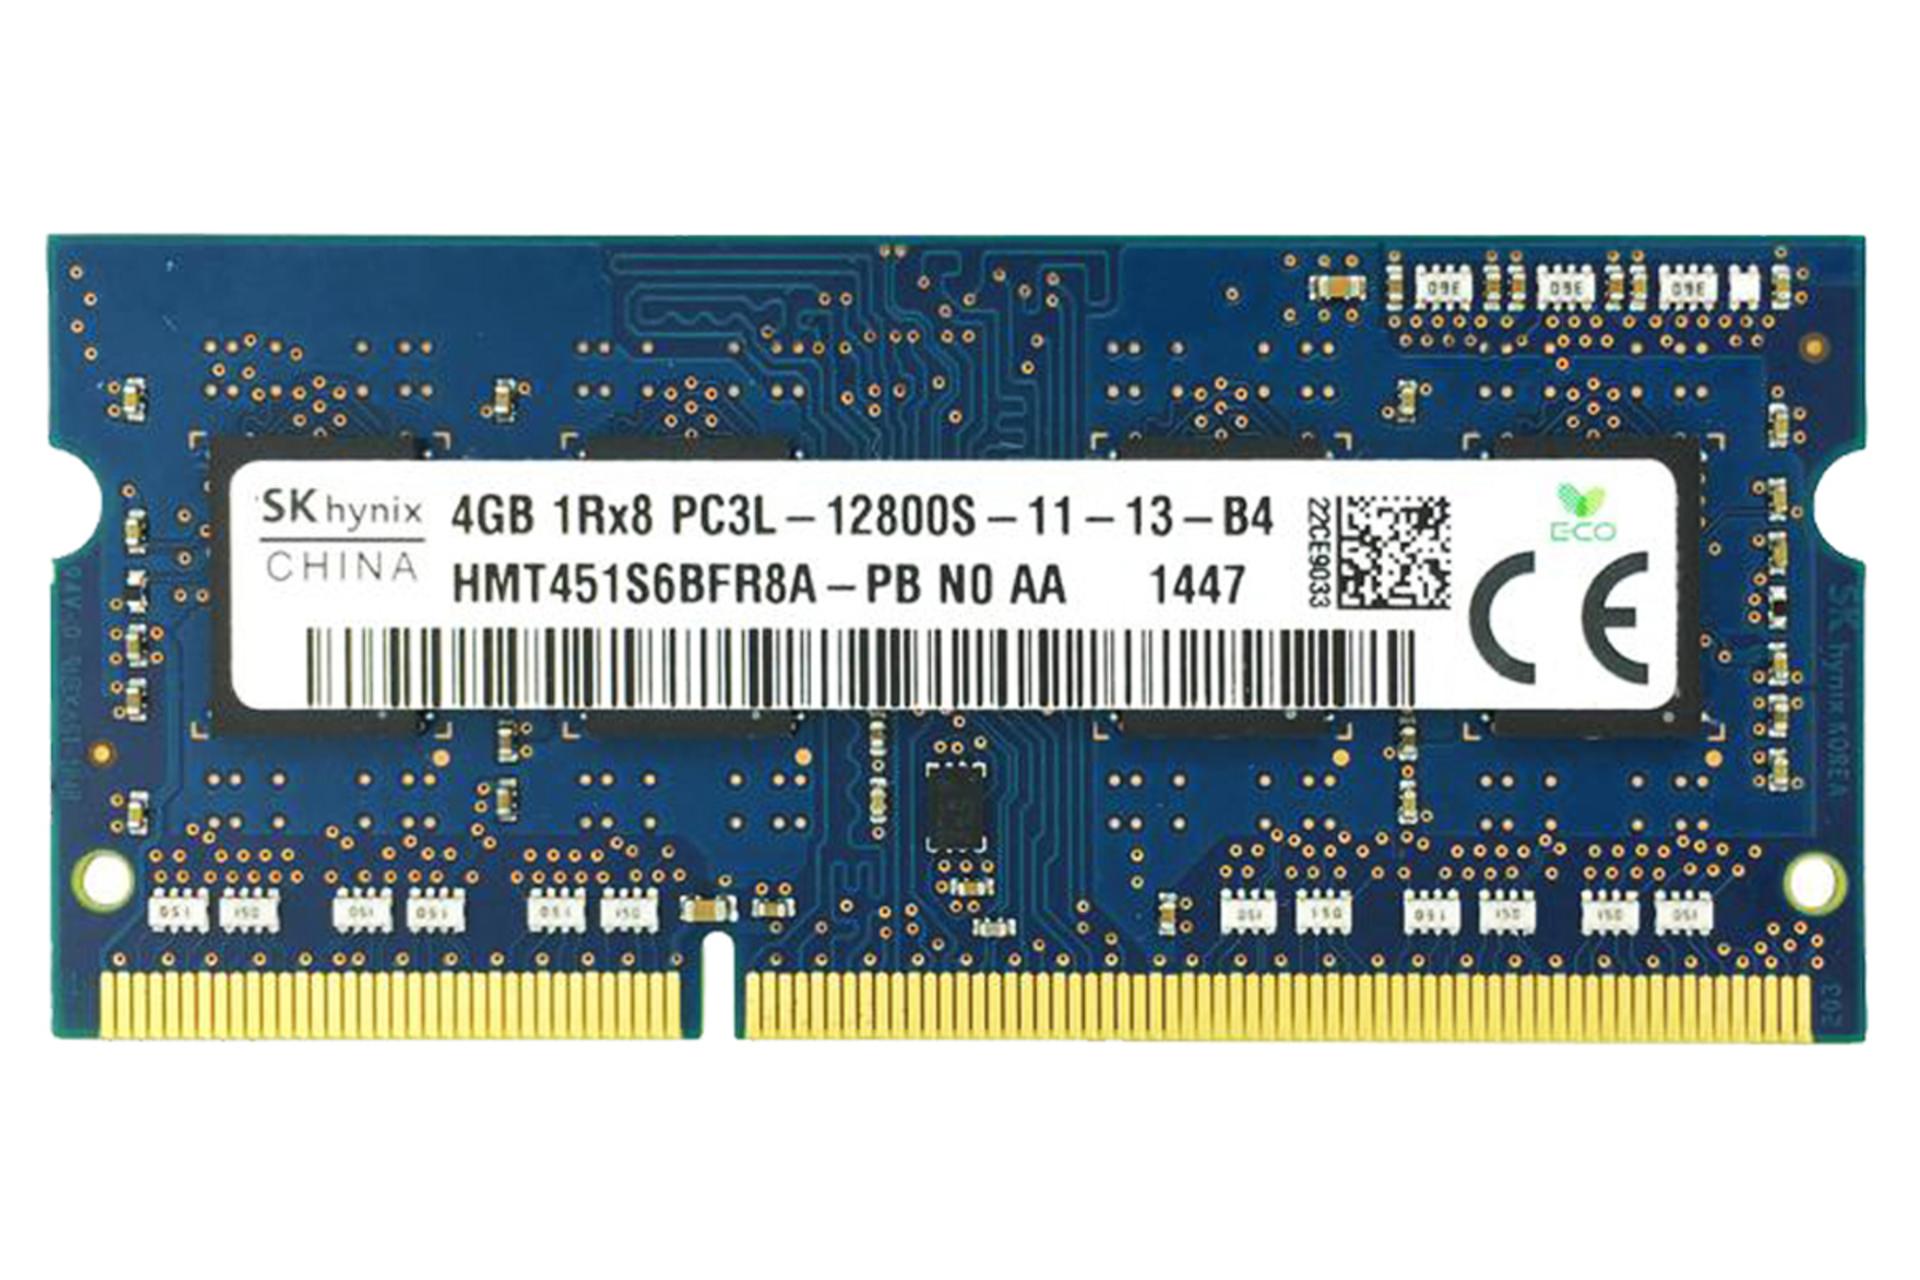 رم اس کی هاینیکس HMT451S6BFR8A-PB ظرفیت 4 گیگابایت از نوع DDR3L-1600